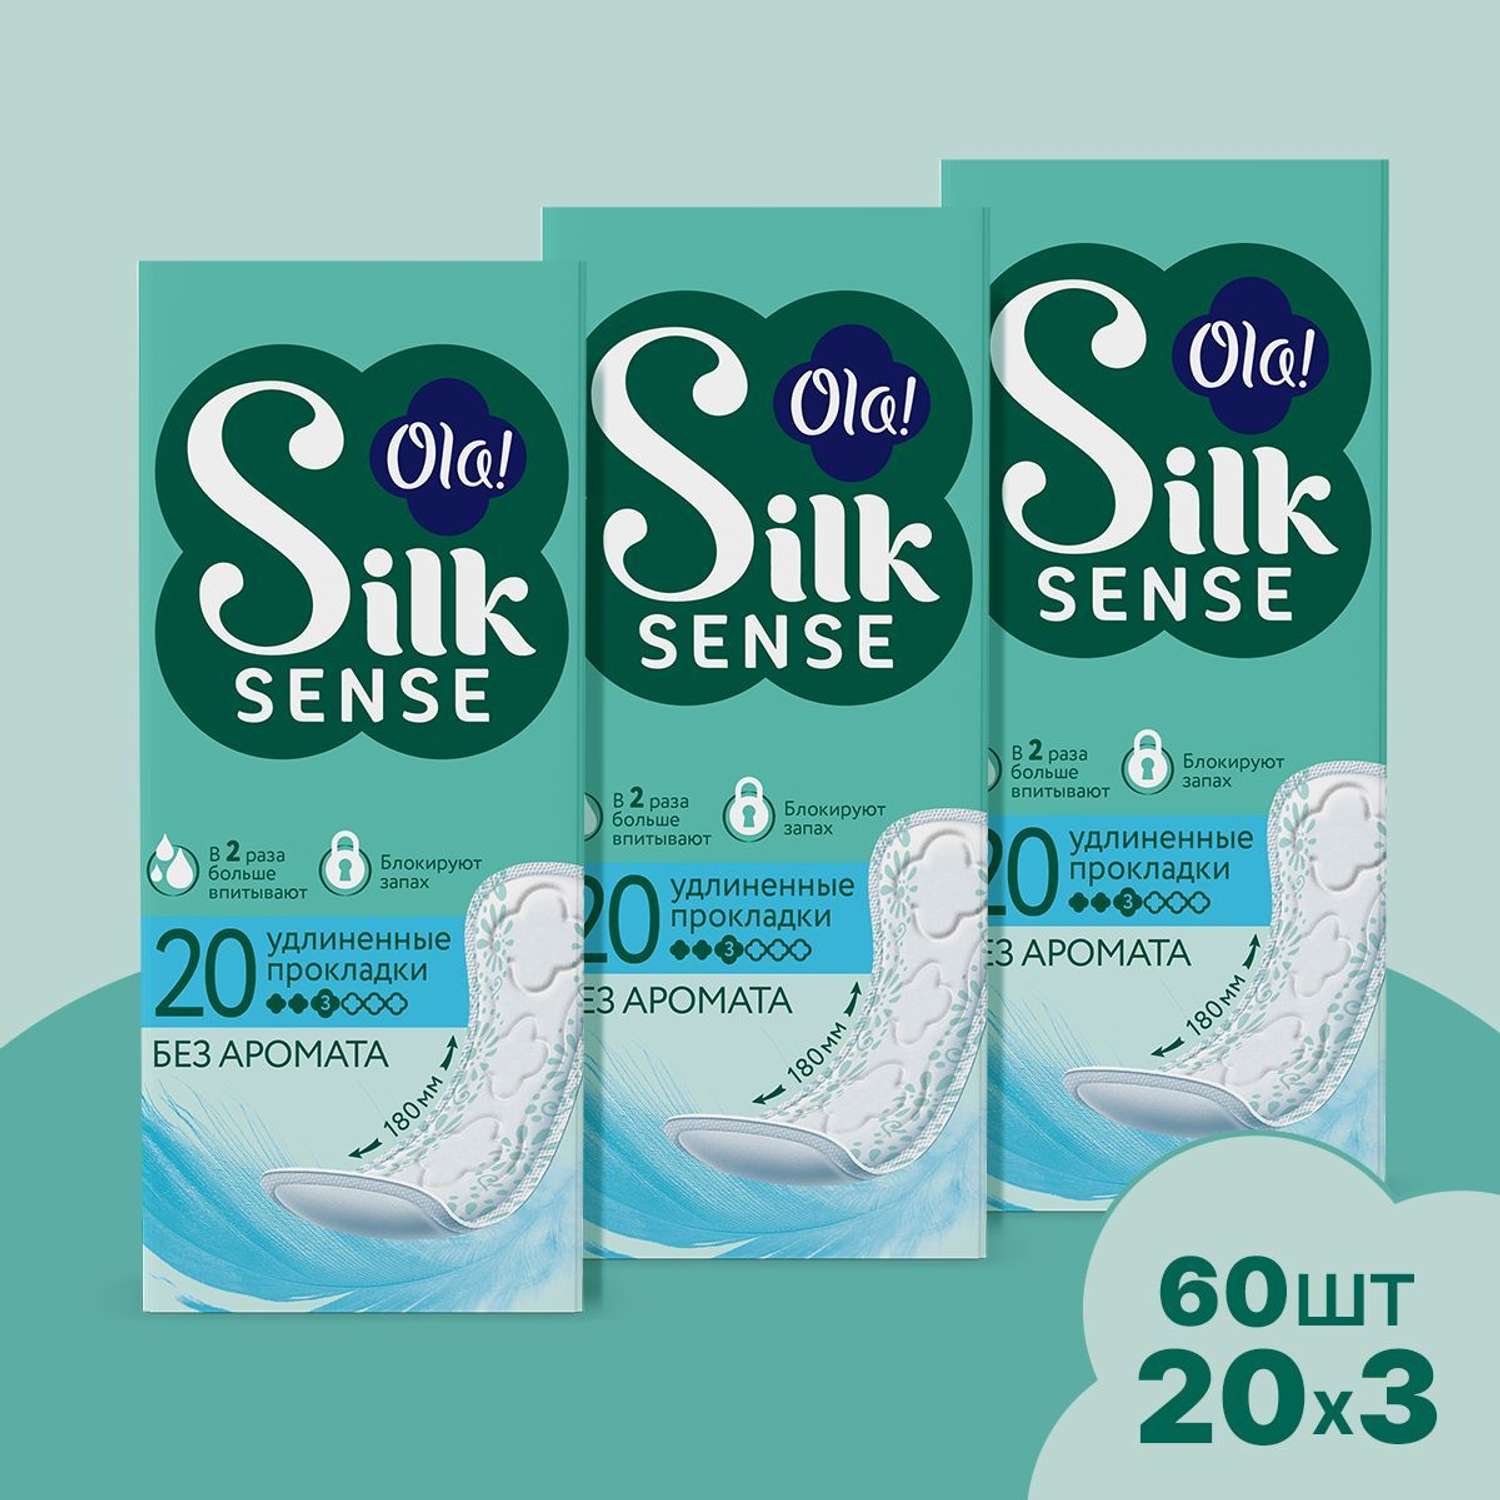 Ежедневные прокладки Ola! Silk Sense удлиненные 60 шт 3 уп по 20 шт - фото 1